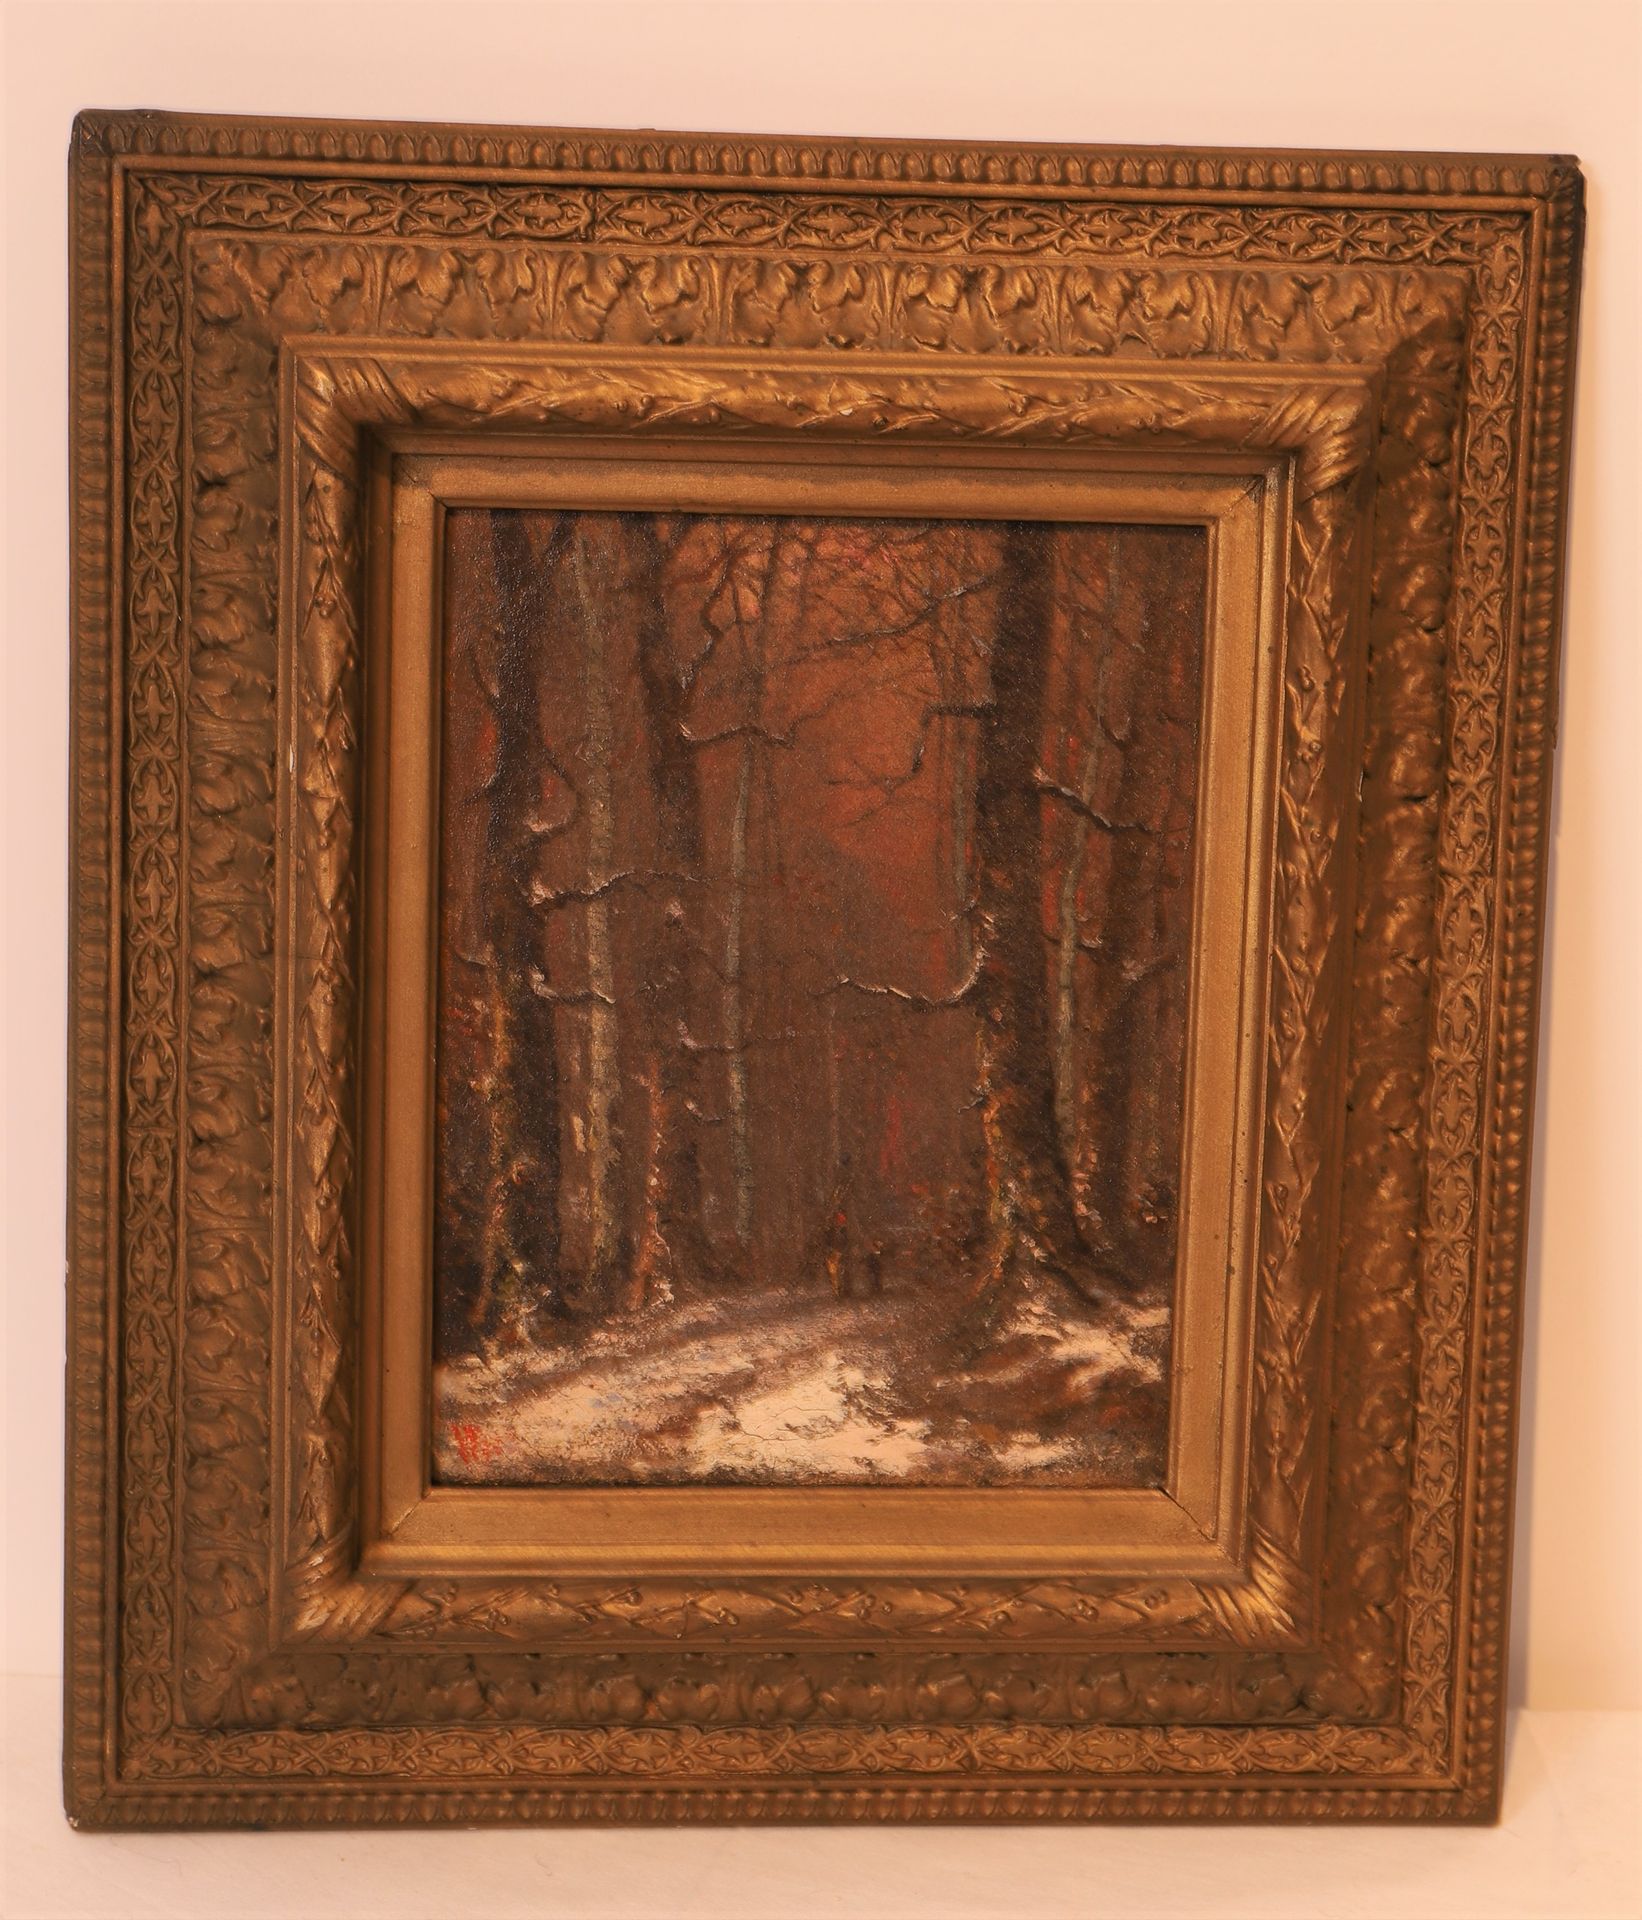 Null 迷人的小画 "在森林的雪道上行走"--19世纪末的法国画作

布面油画，右下角有图案

21,5 x 16,5 cm

模制和雕刻的木质框架